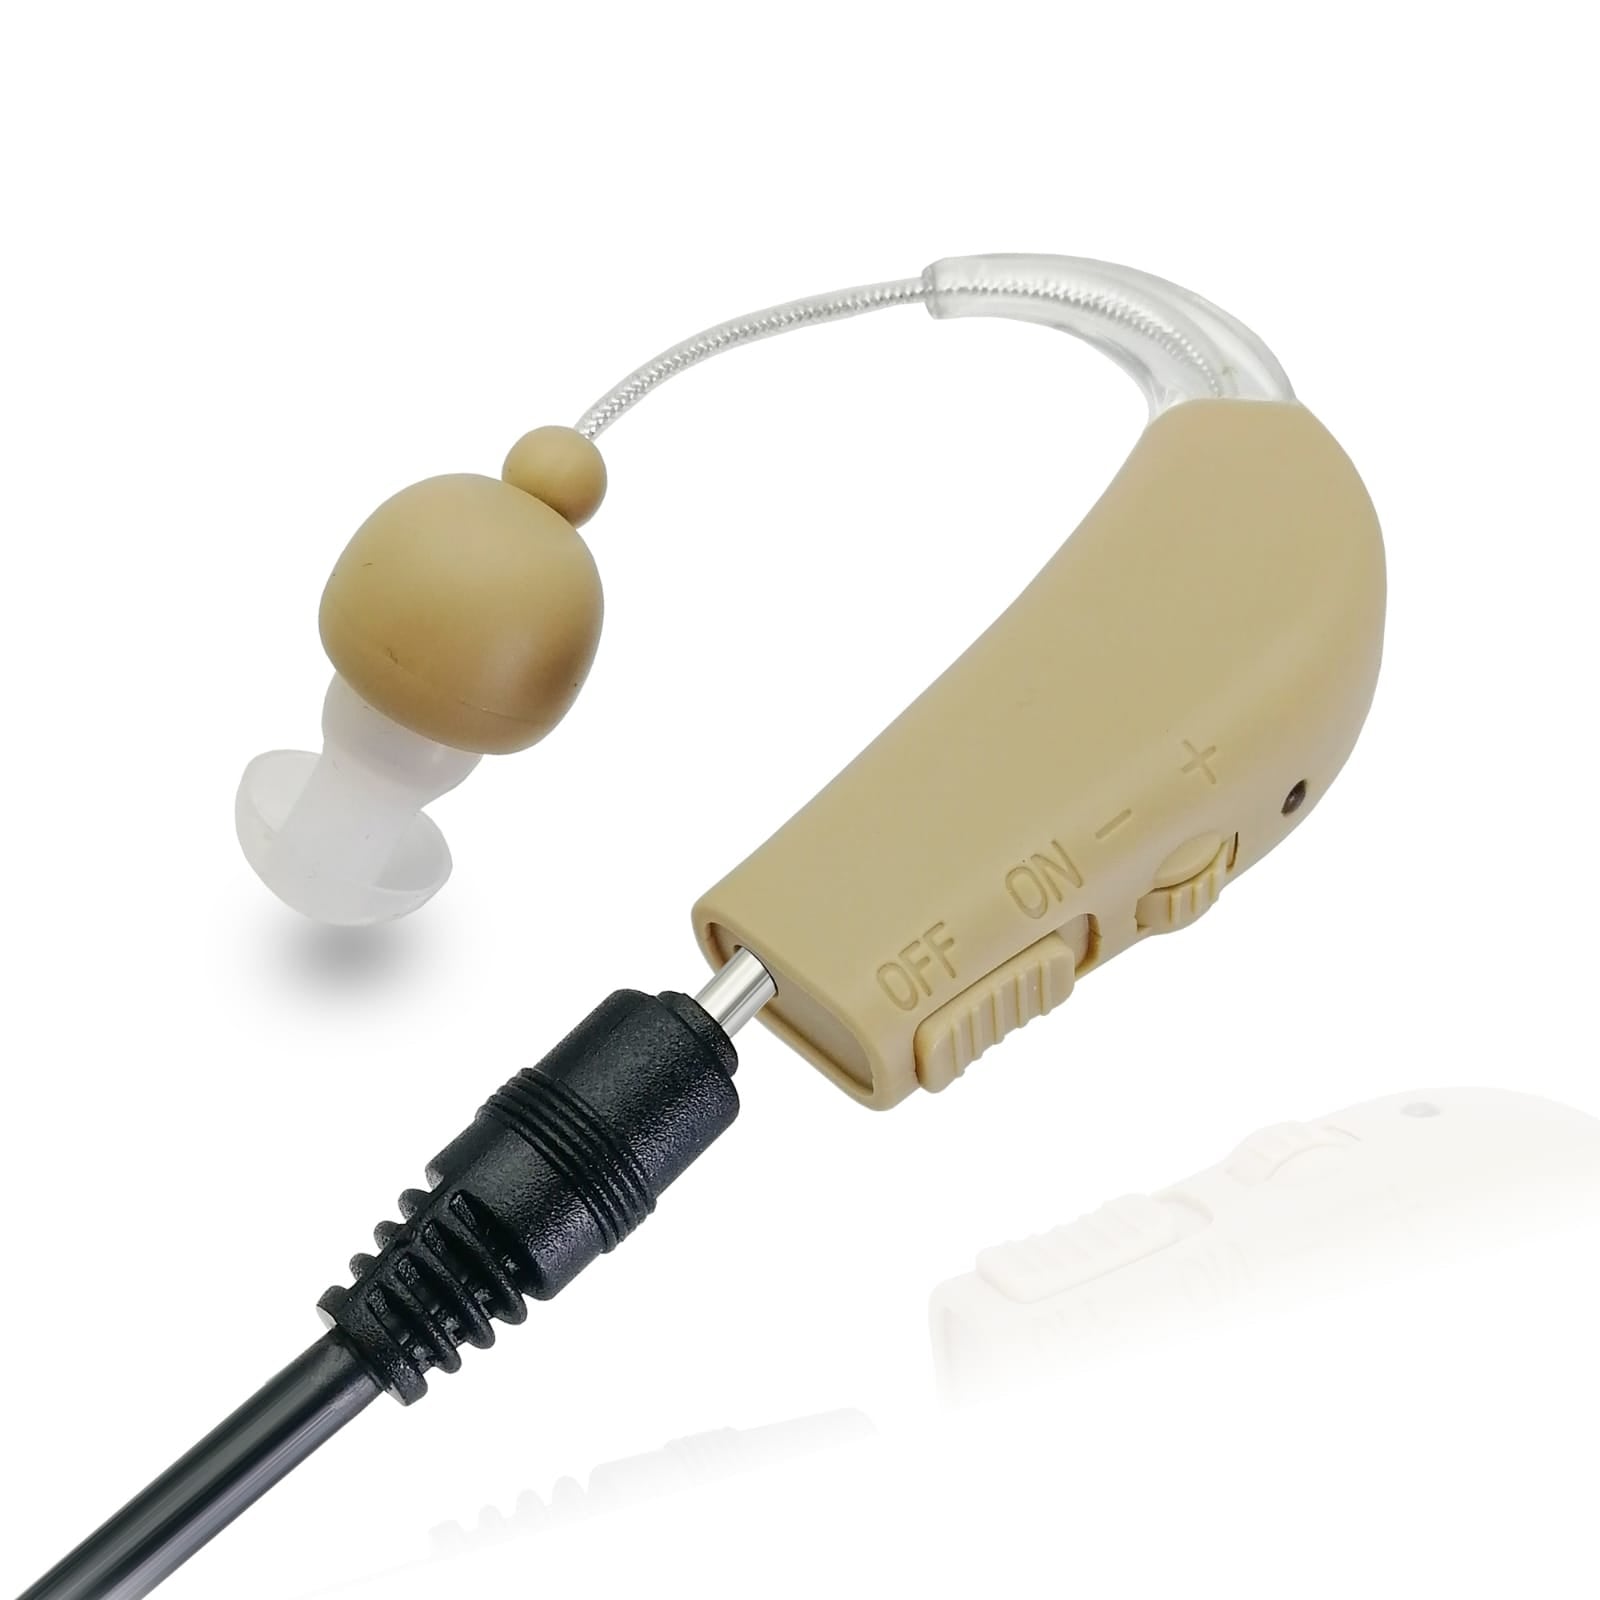 Paire de mini prothèses auditives derrière l'oreille BTE-27 Prothèses auditives rechargeables Conçues et fabriquées aux États-Unis Vendues à plus de 12 000 dans le monde